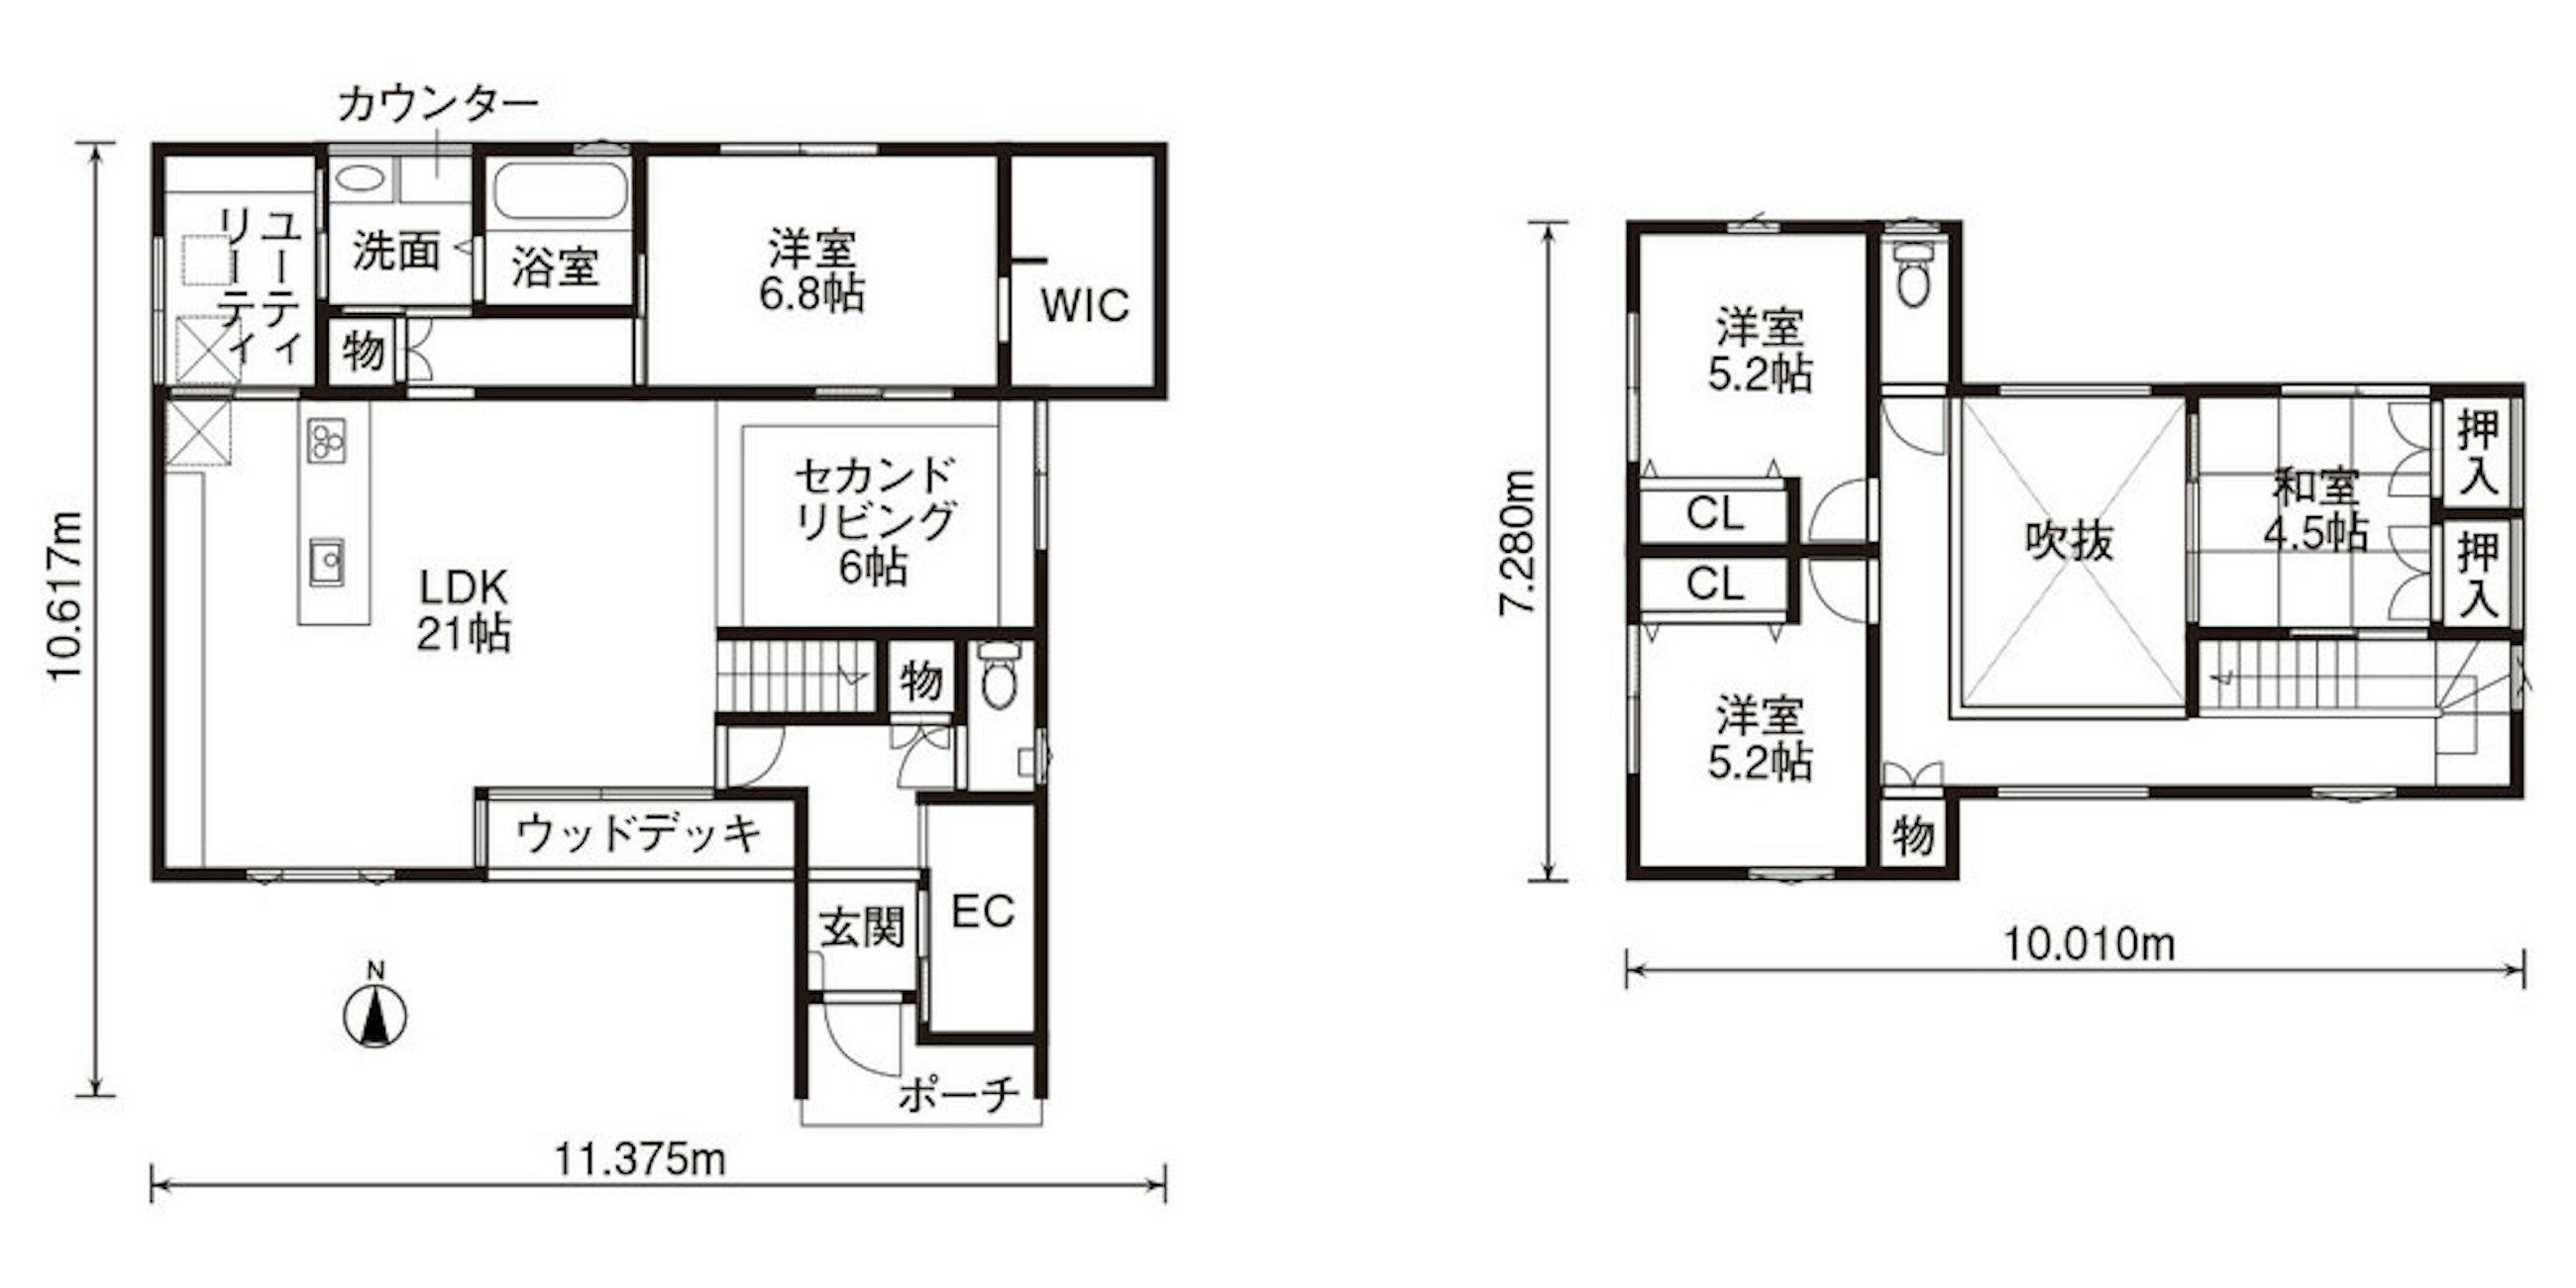 【富山】オンリーワン一級建築士事務所_間取り図